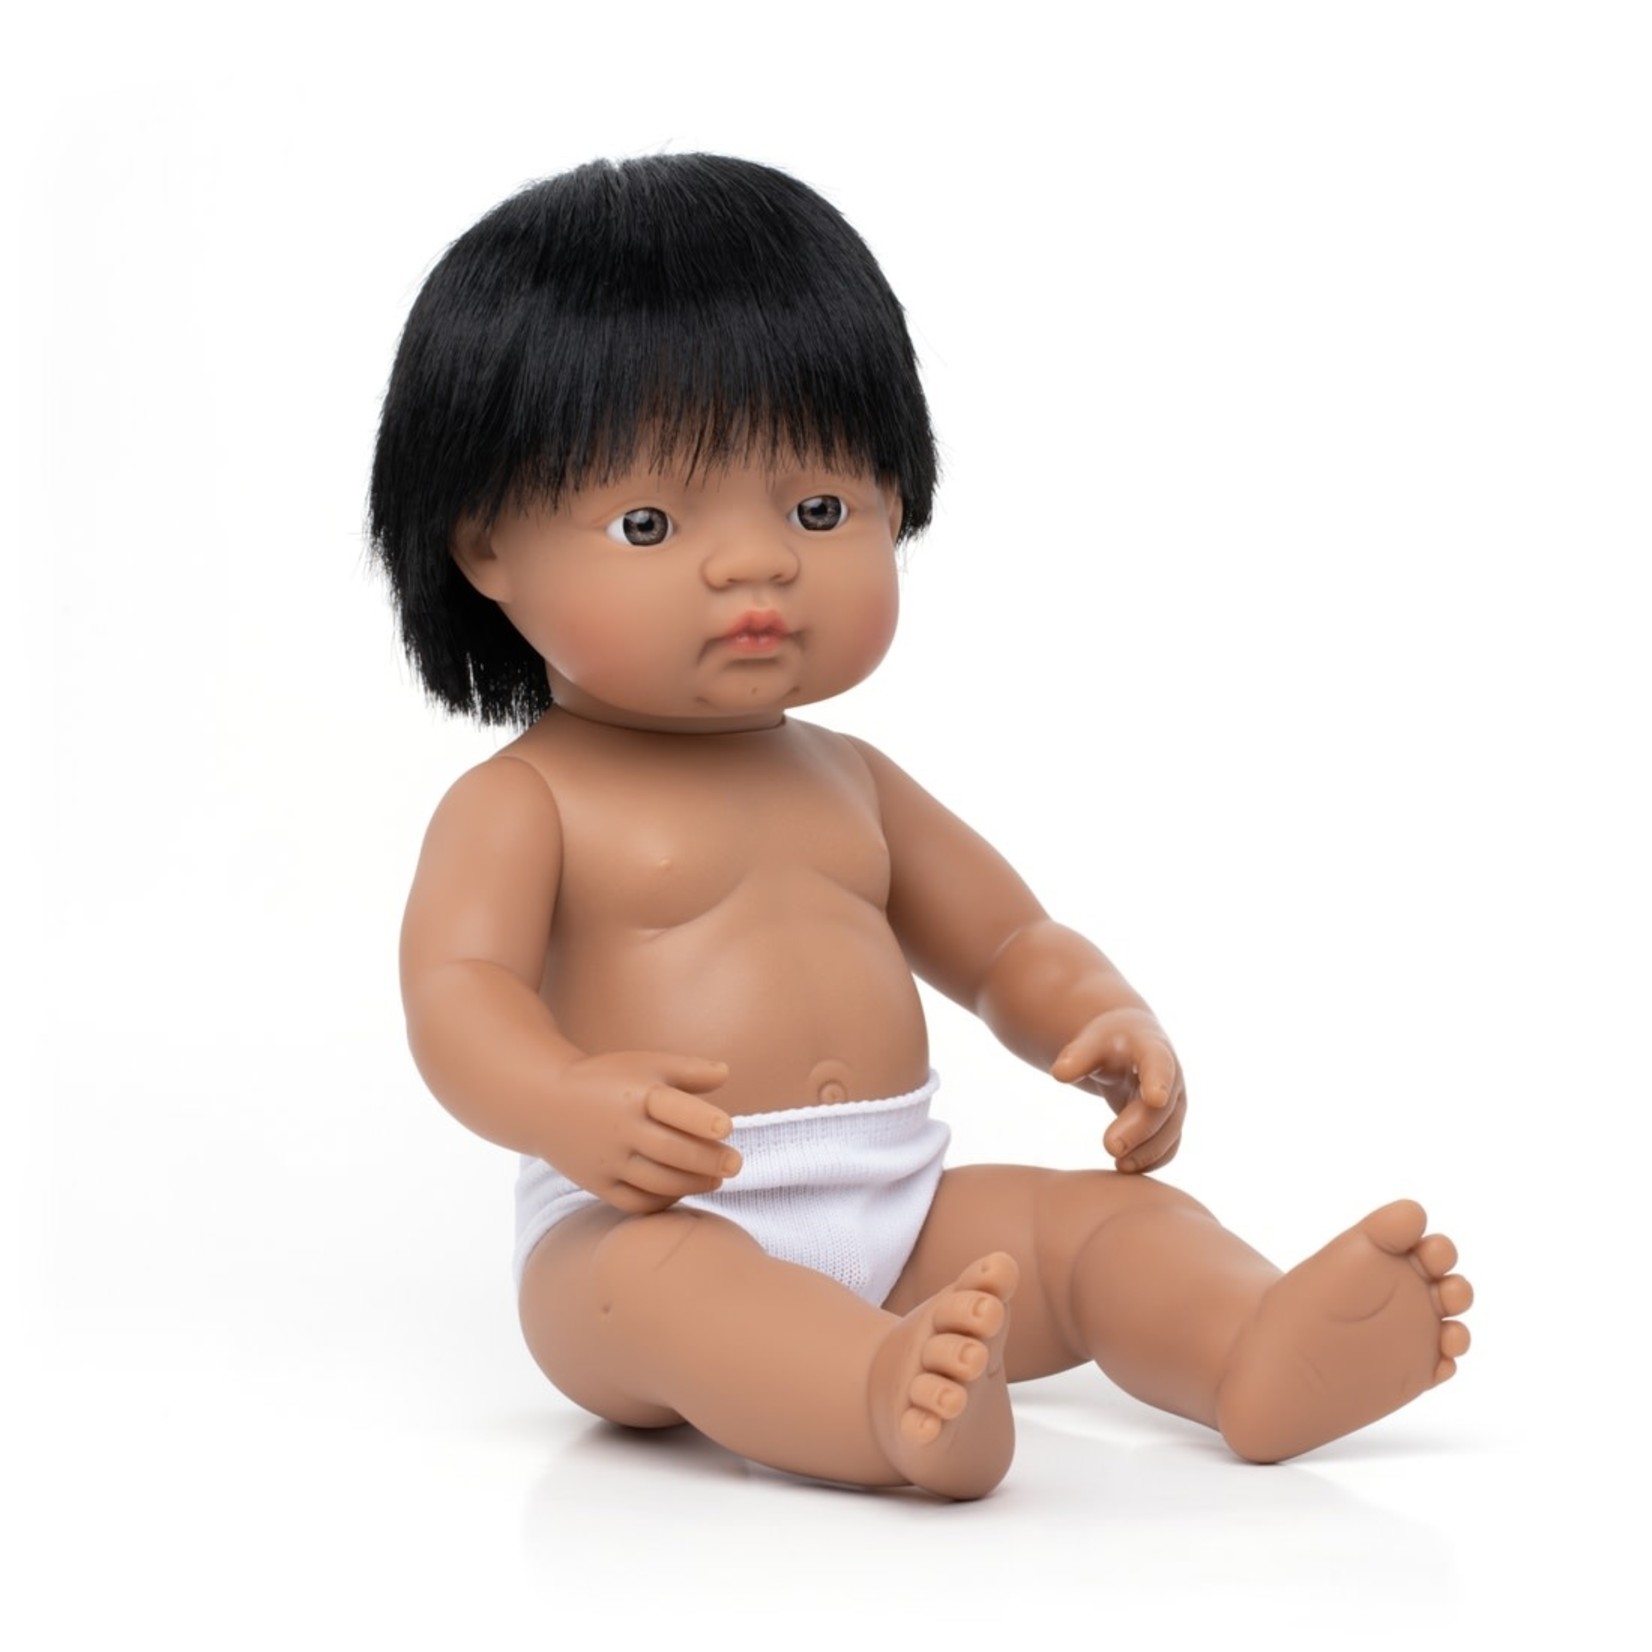 miniland 15" hispanic baby doll